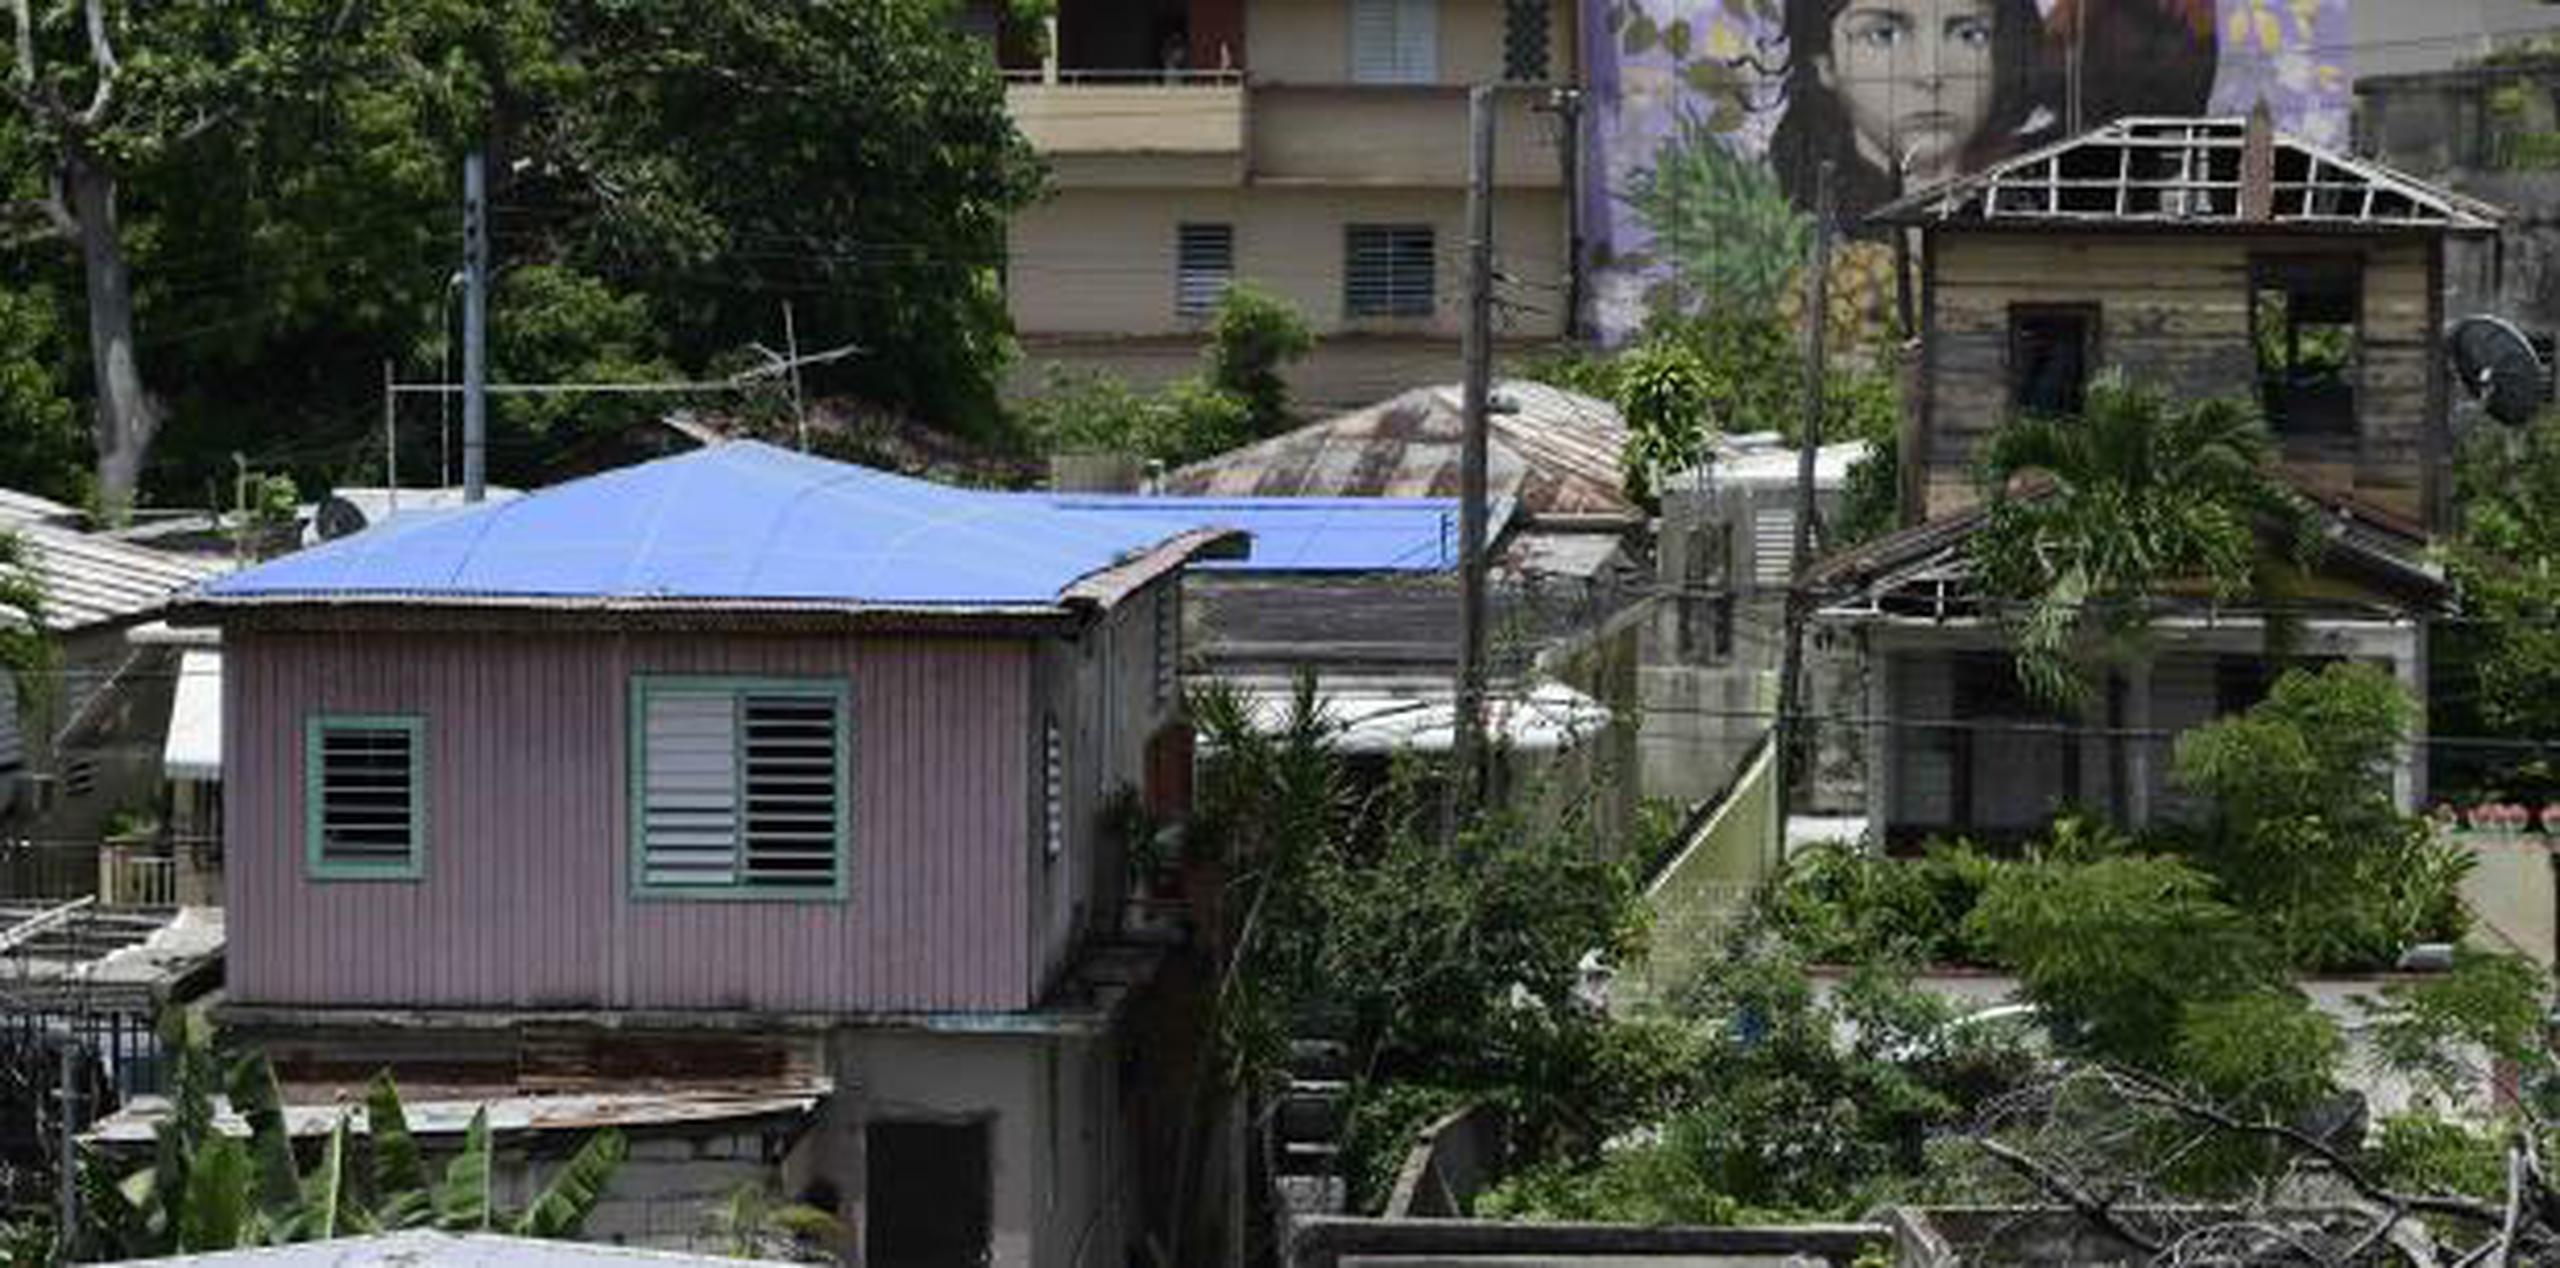 Viviendas afectadas por el huracán María, algunas cubiertas por estructuras de plástico azul, en el barrio El Gandul, en San Juan. (AP / Carlos Giusti)